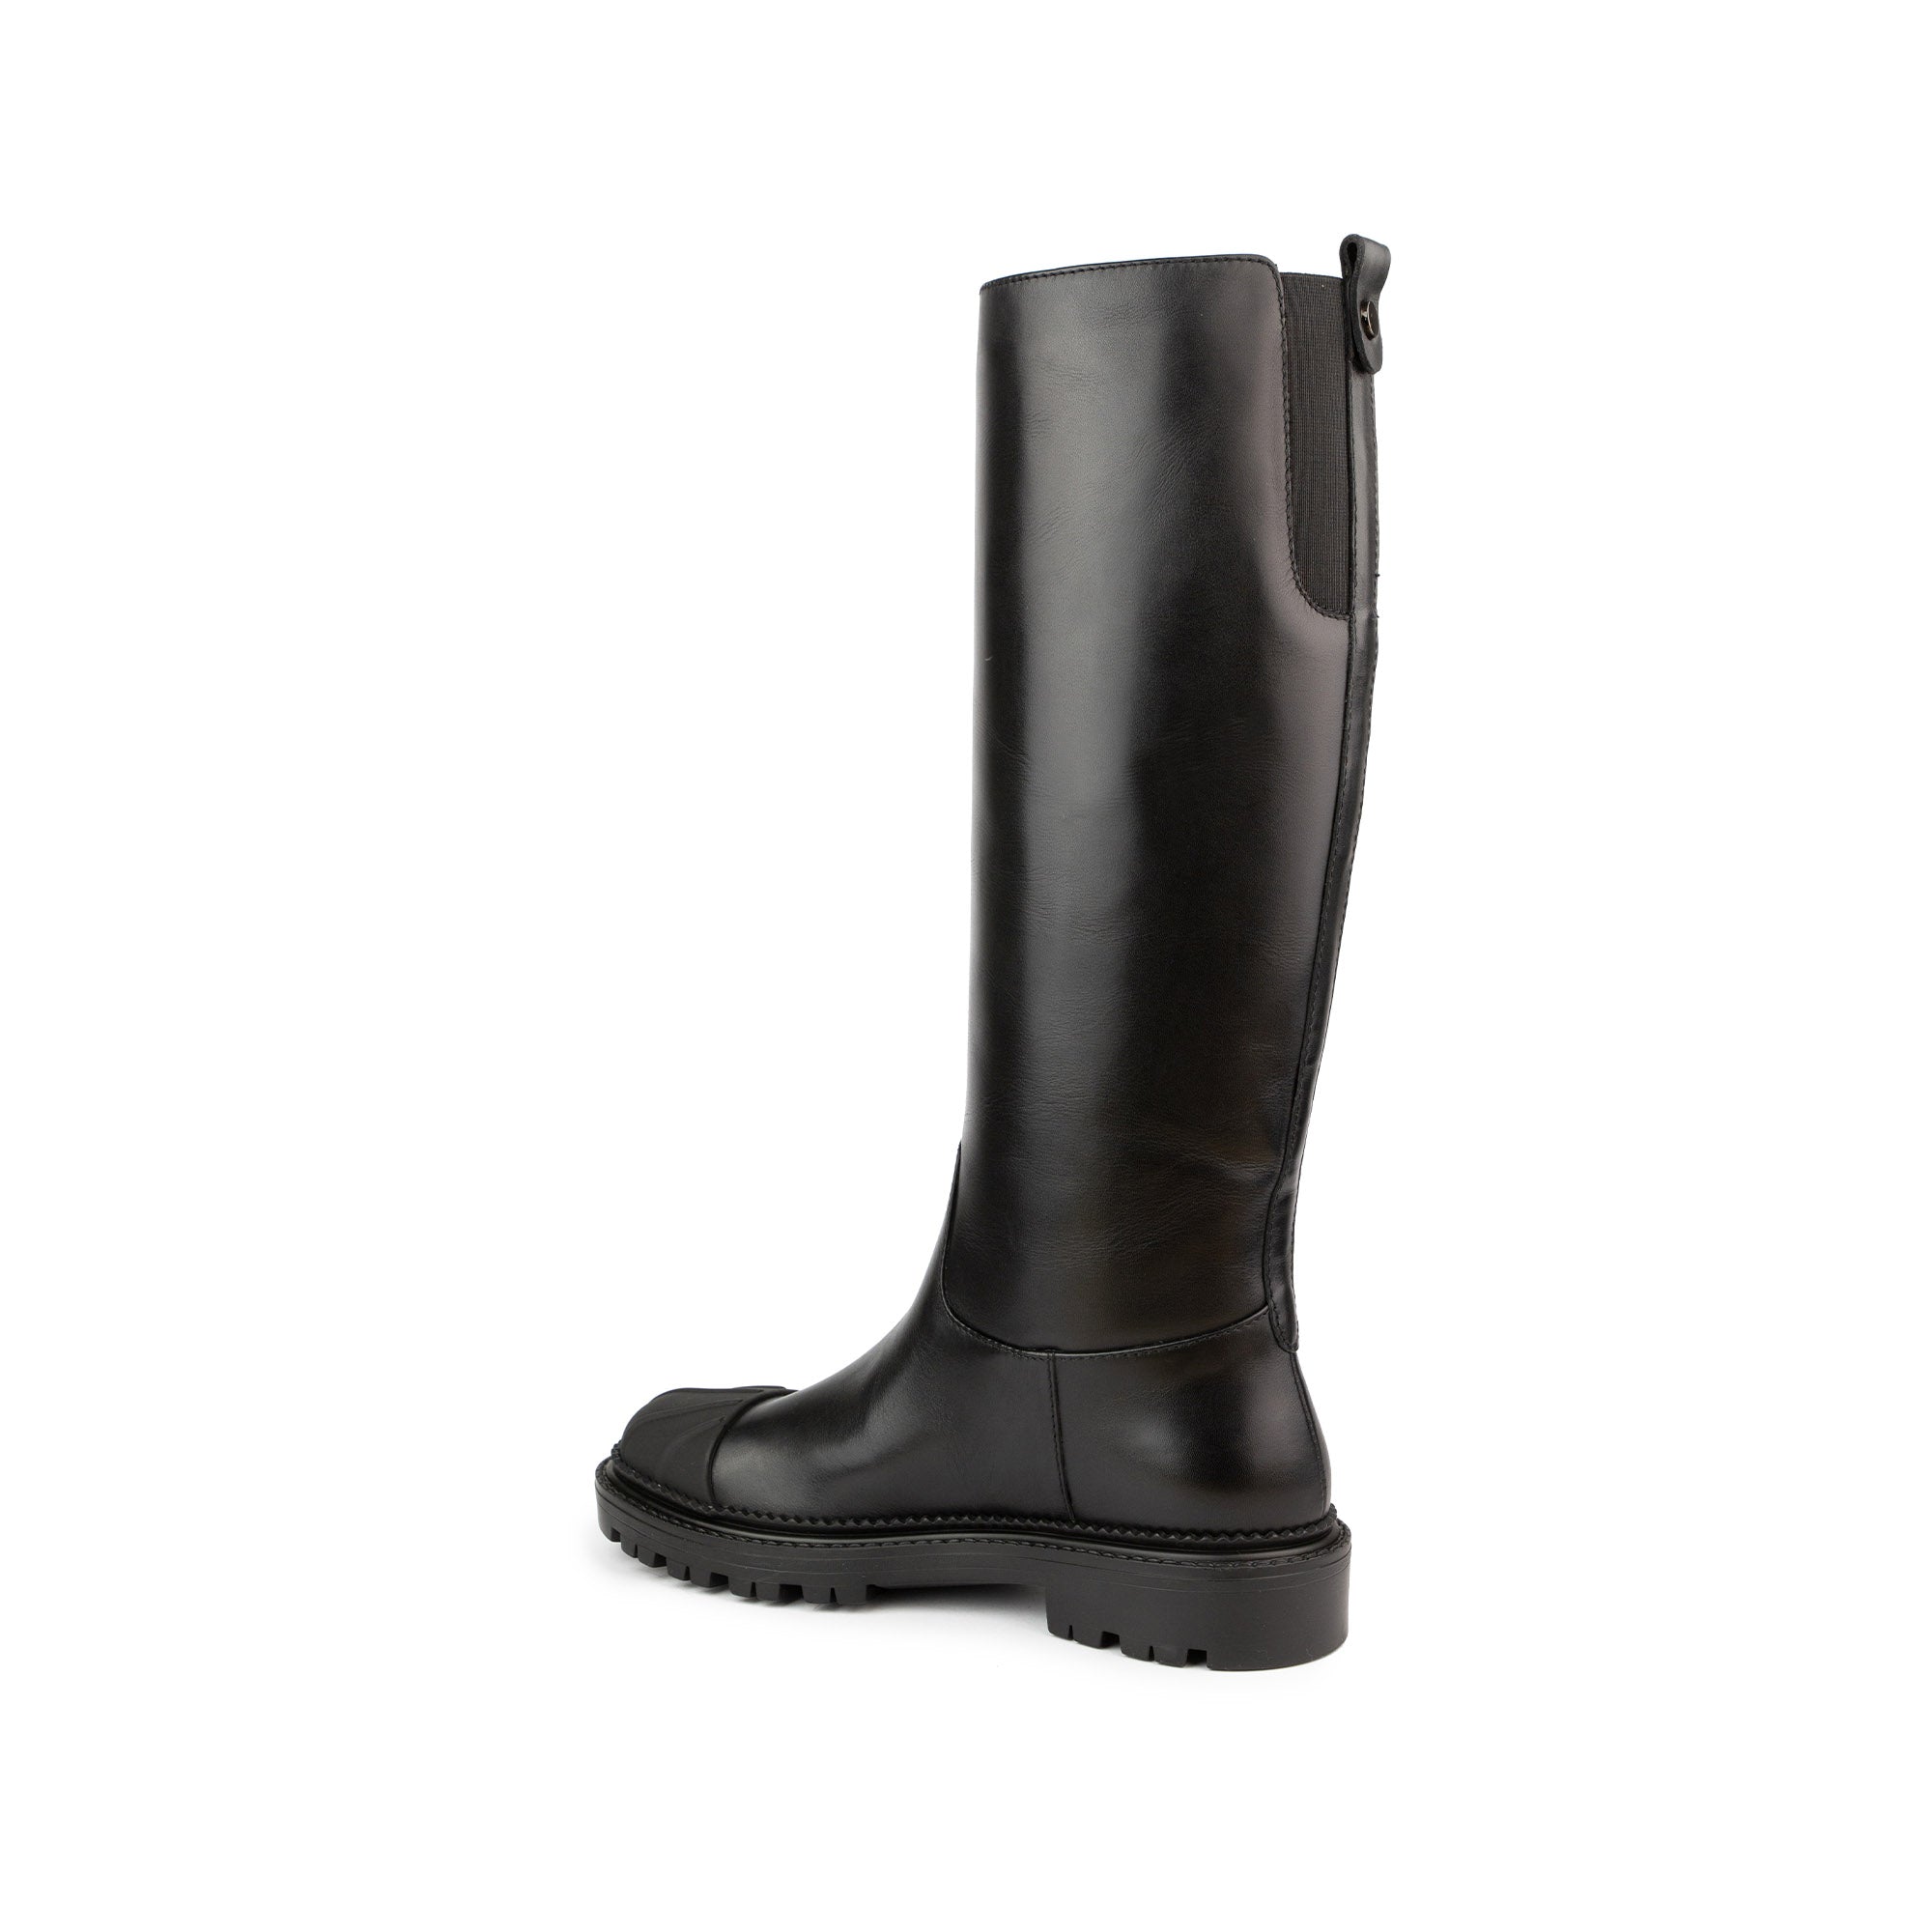 Jak Waterproof Boots | Women’s Italian Leather Tall Boots in ‘Black ...